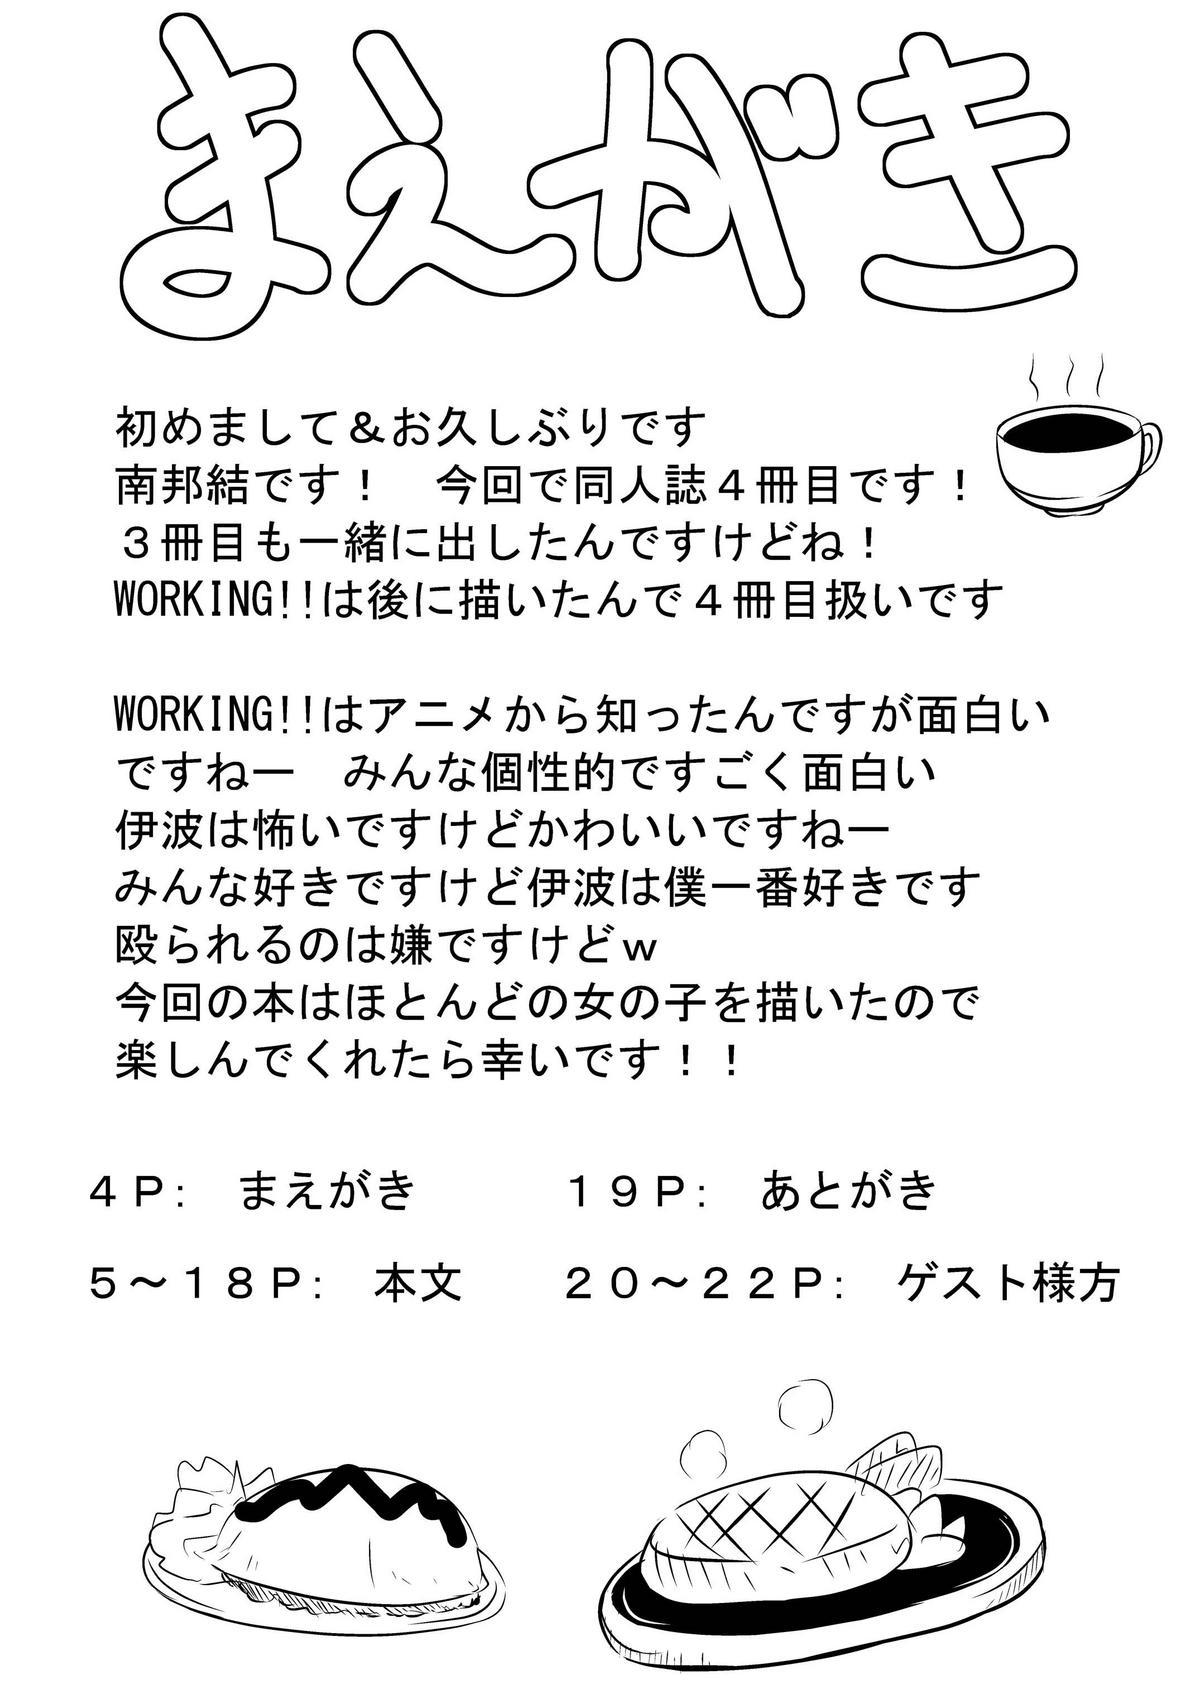 Super Wagnaria no Minasan Shigoto Shiro - Working Omegle - Page 4